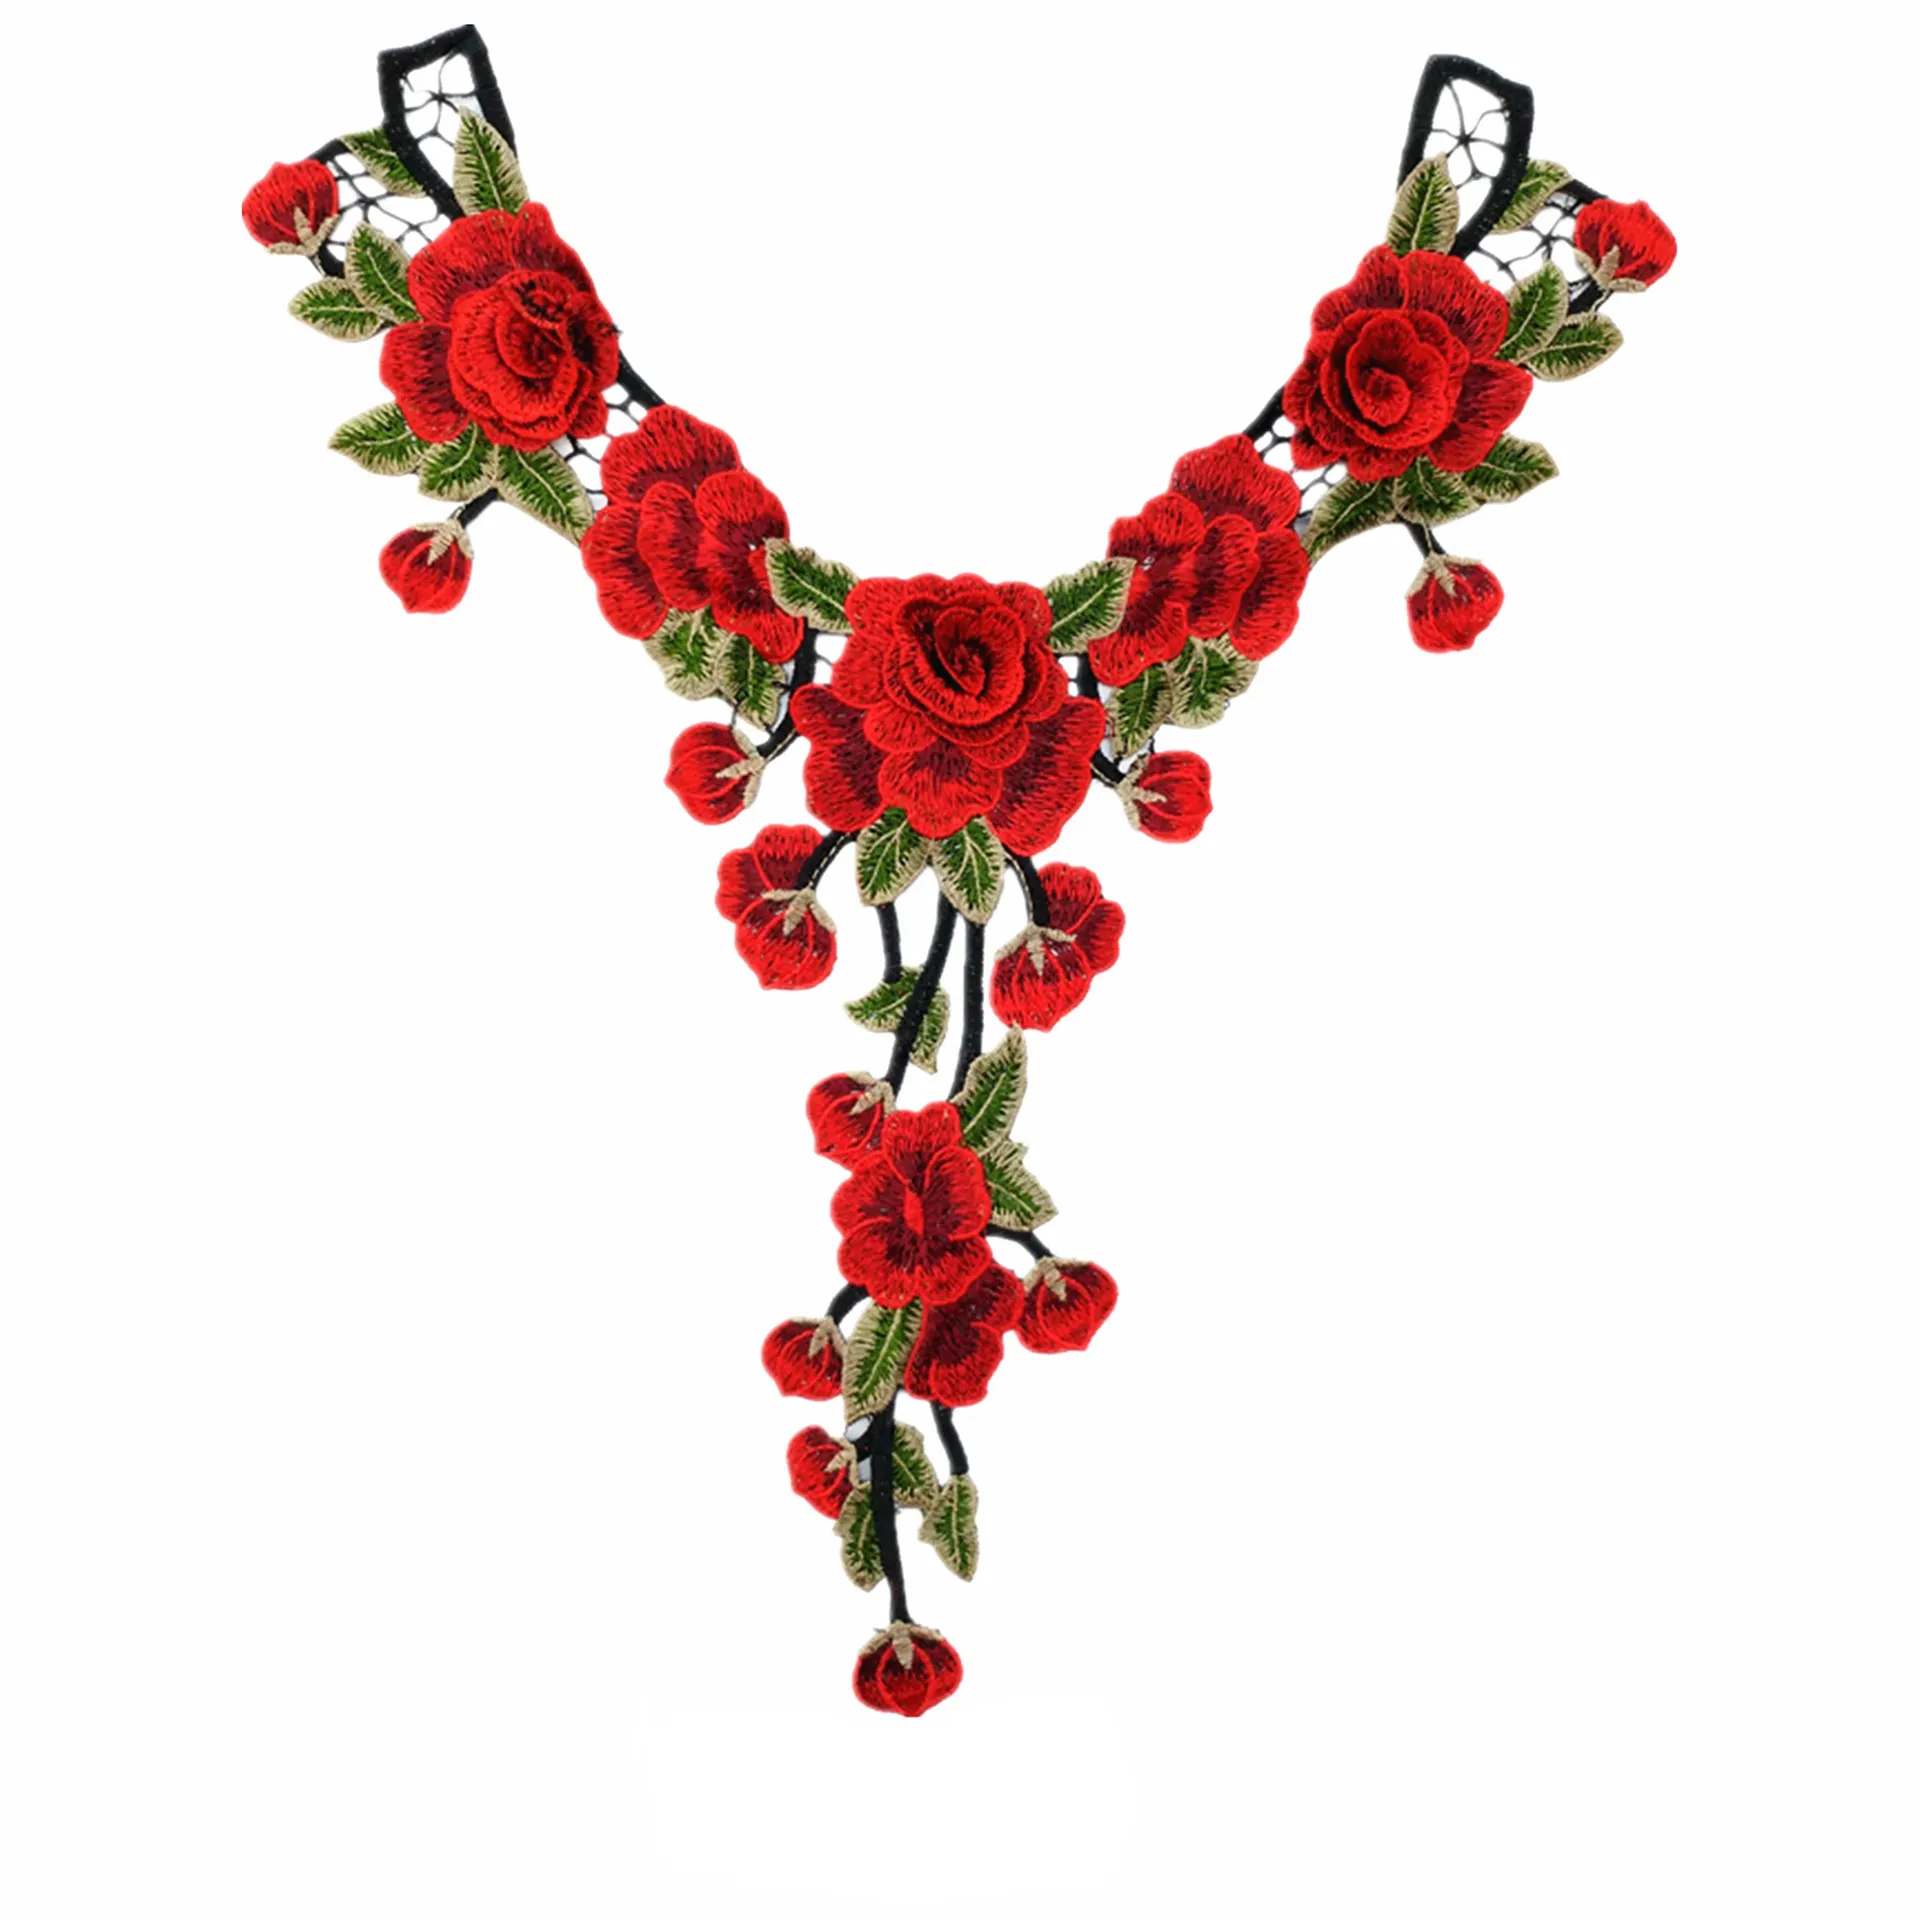 Bella nuova rosa rossa fiore ricamo scollo in pizzo tessuto fai da te abito da sposa fatto a mano colletto in pizzo per cucito forniture artigianato